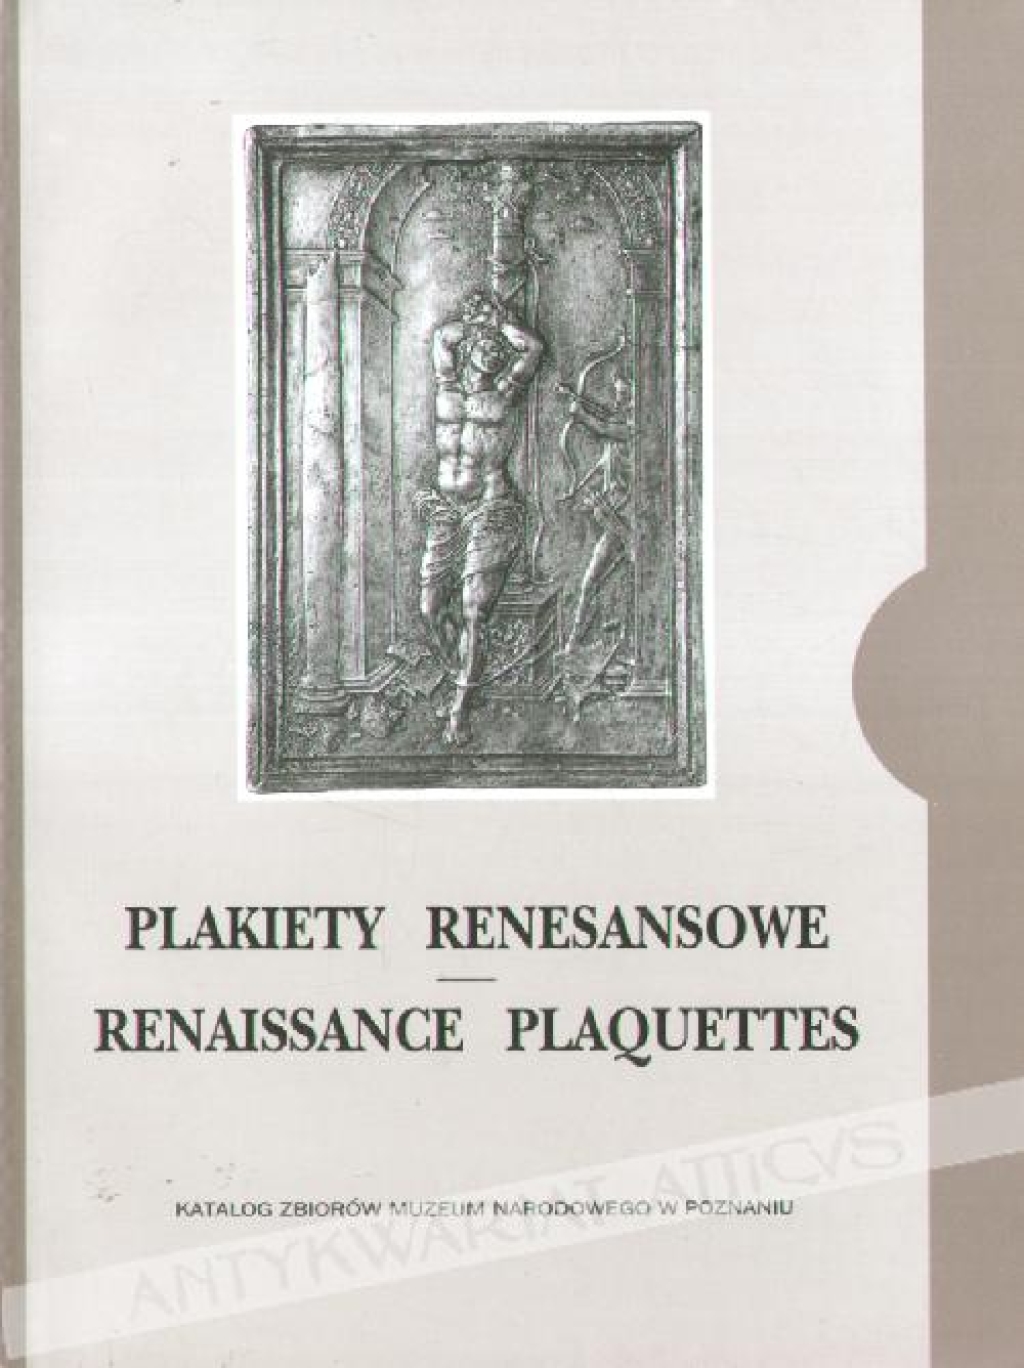 Plakiety renesansowe. Katalog zbiorów Muzeum Narodowego w PoznaniuRenaissance plaquettes. Catalogue of the National Museum in Poznań collection